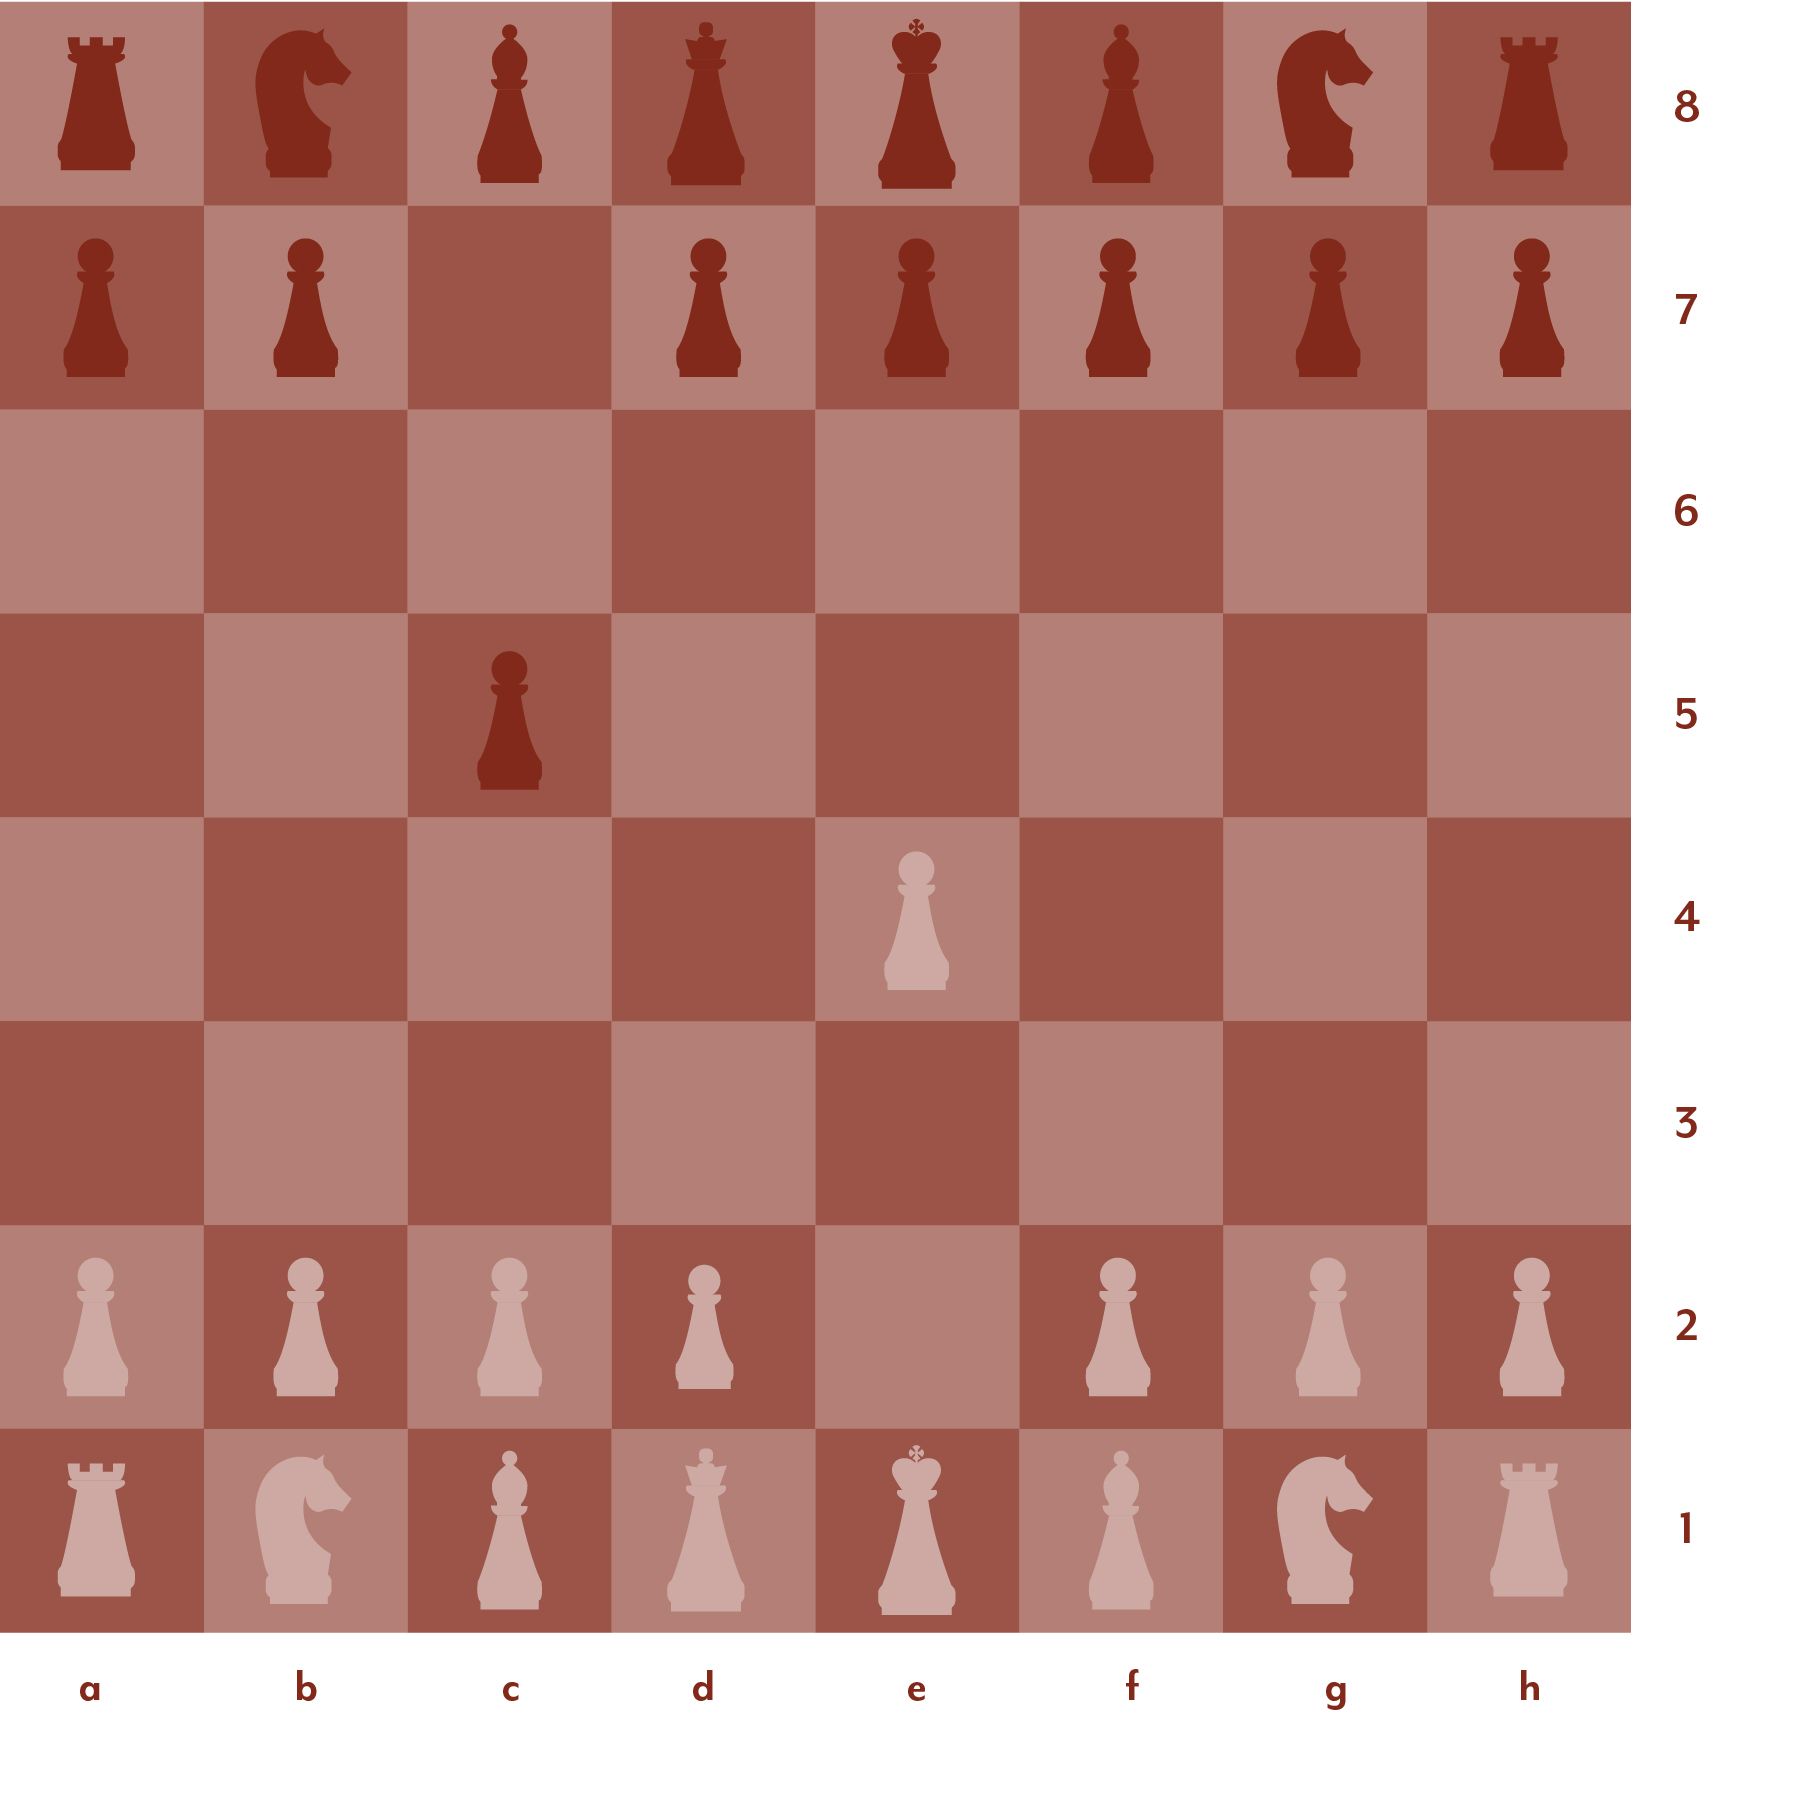 Configuració de taulers d'escacs vermells i roses 4